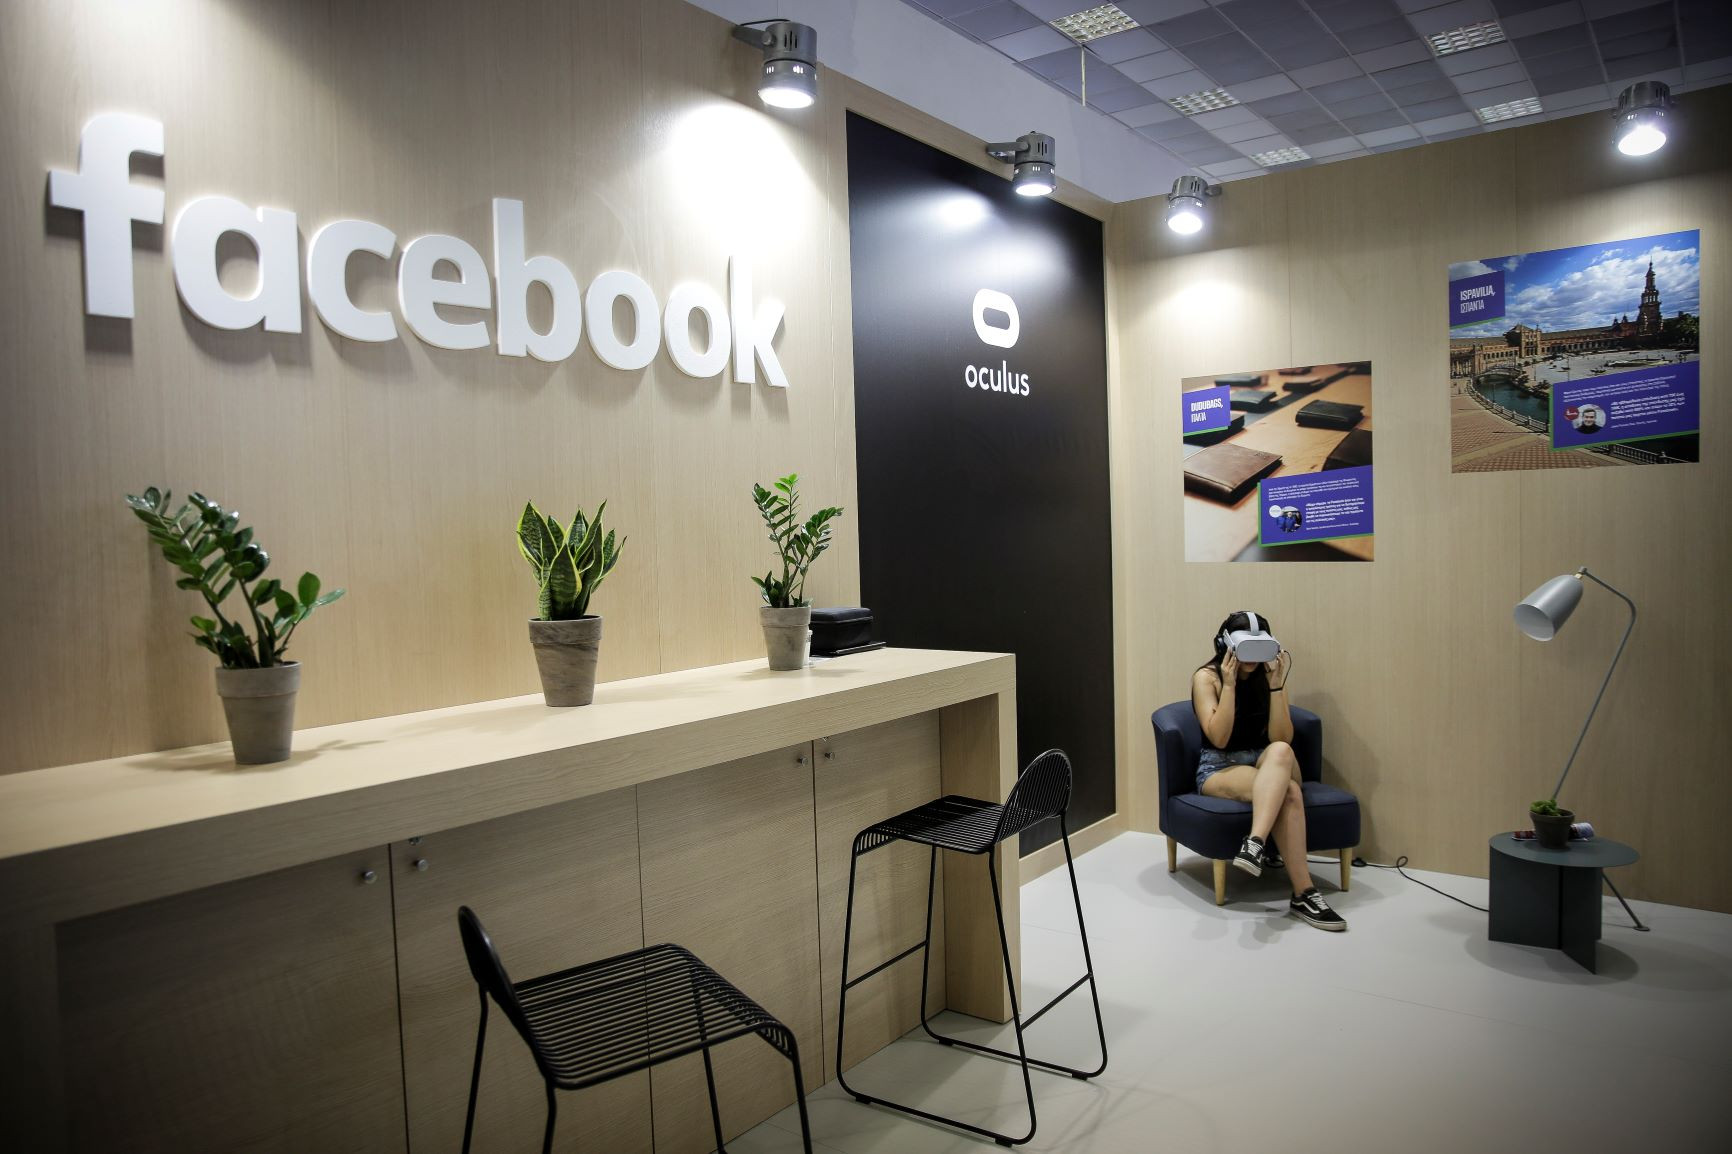 Ποια είναι η εταιρεία που λογοκρίνει τις αναρτήσεις στο Facebook